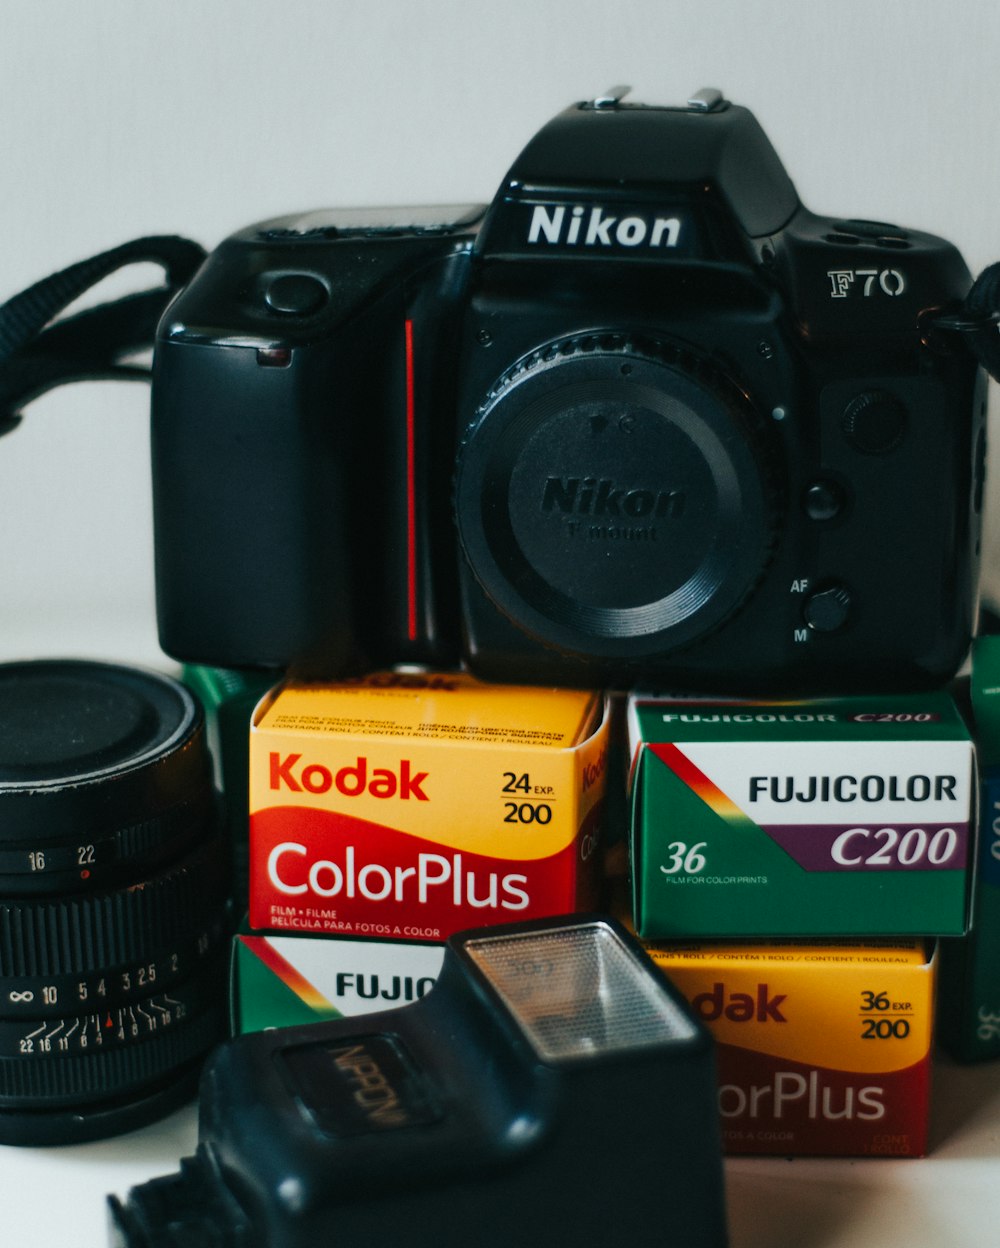 black Nikon F70 bridge camera